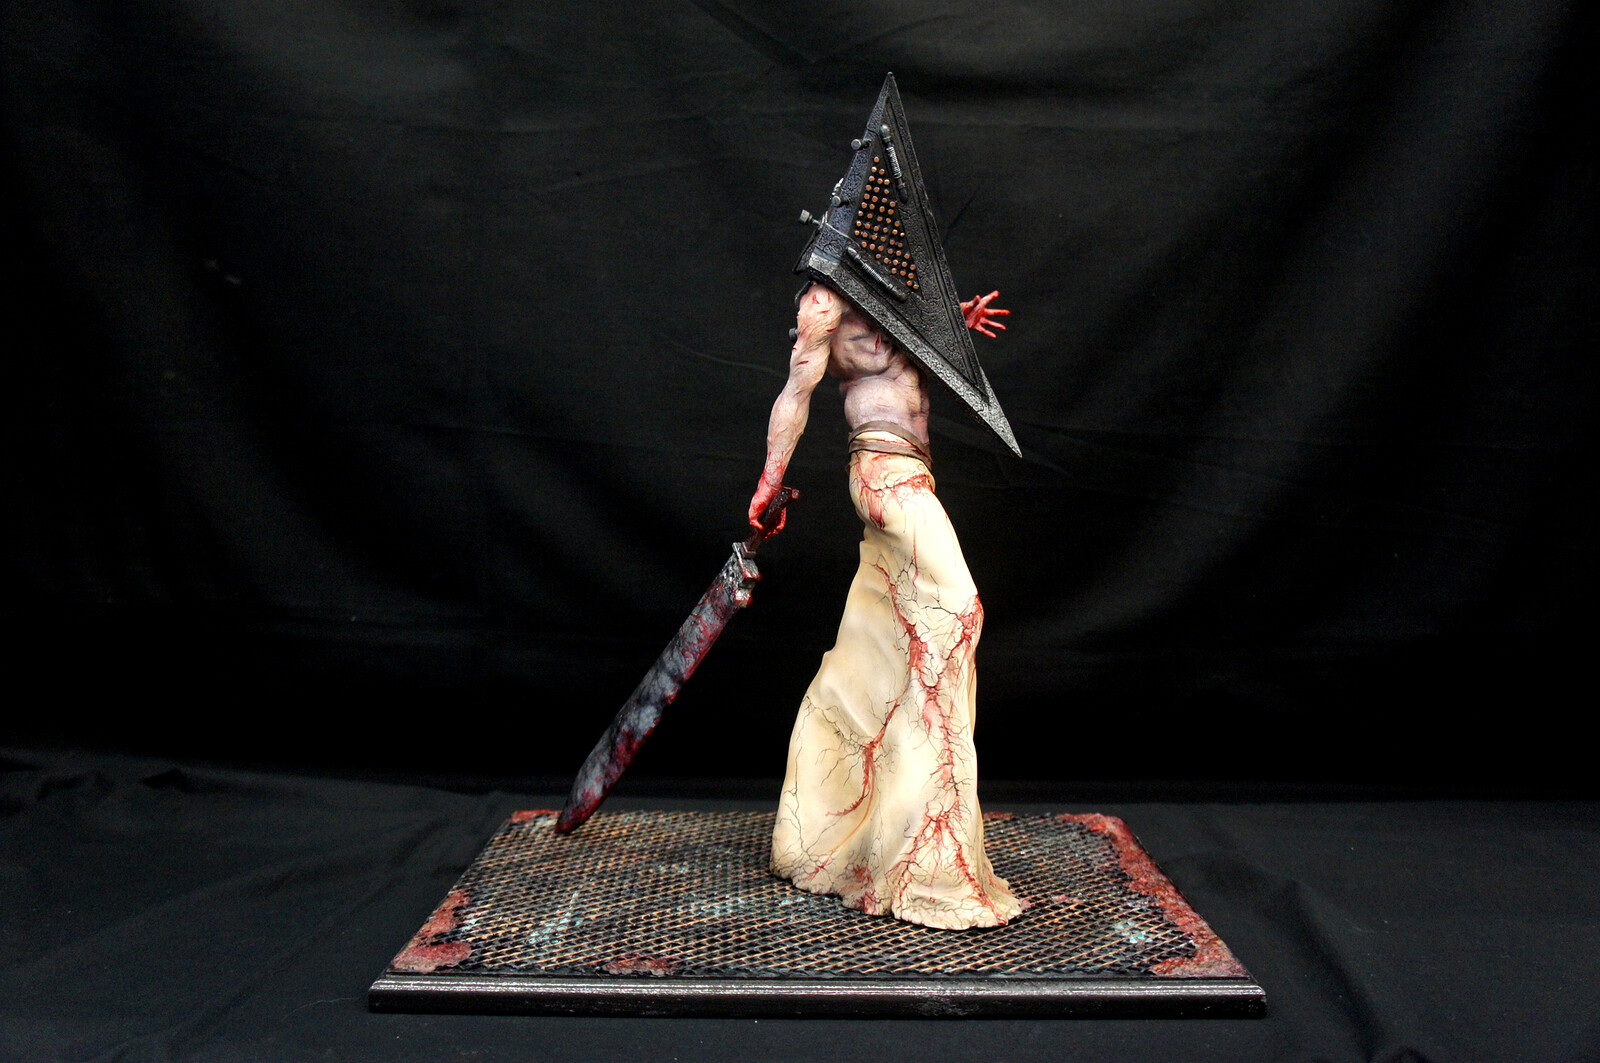 Hellpainter: Silent Hill Bogeyman Art Statue DX
https://www.solidart.club/